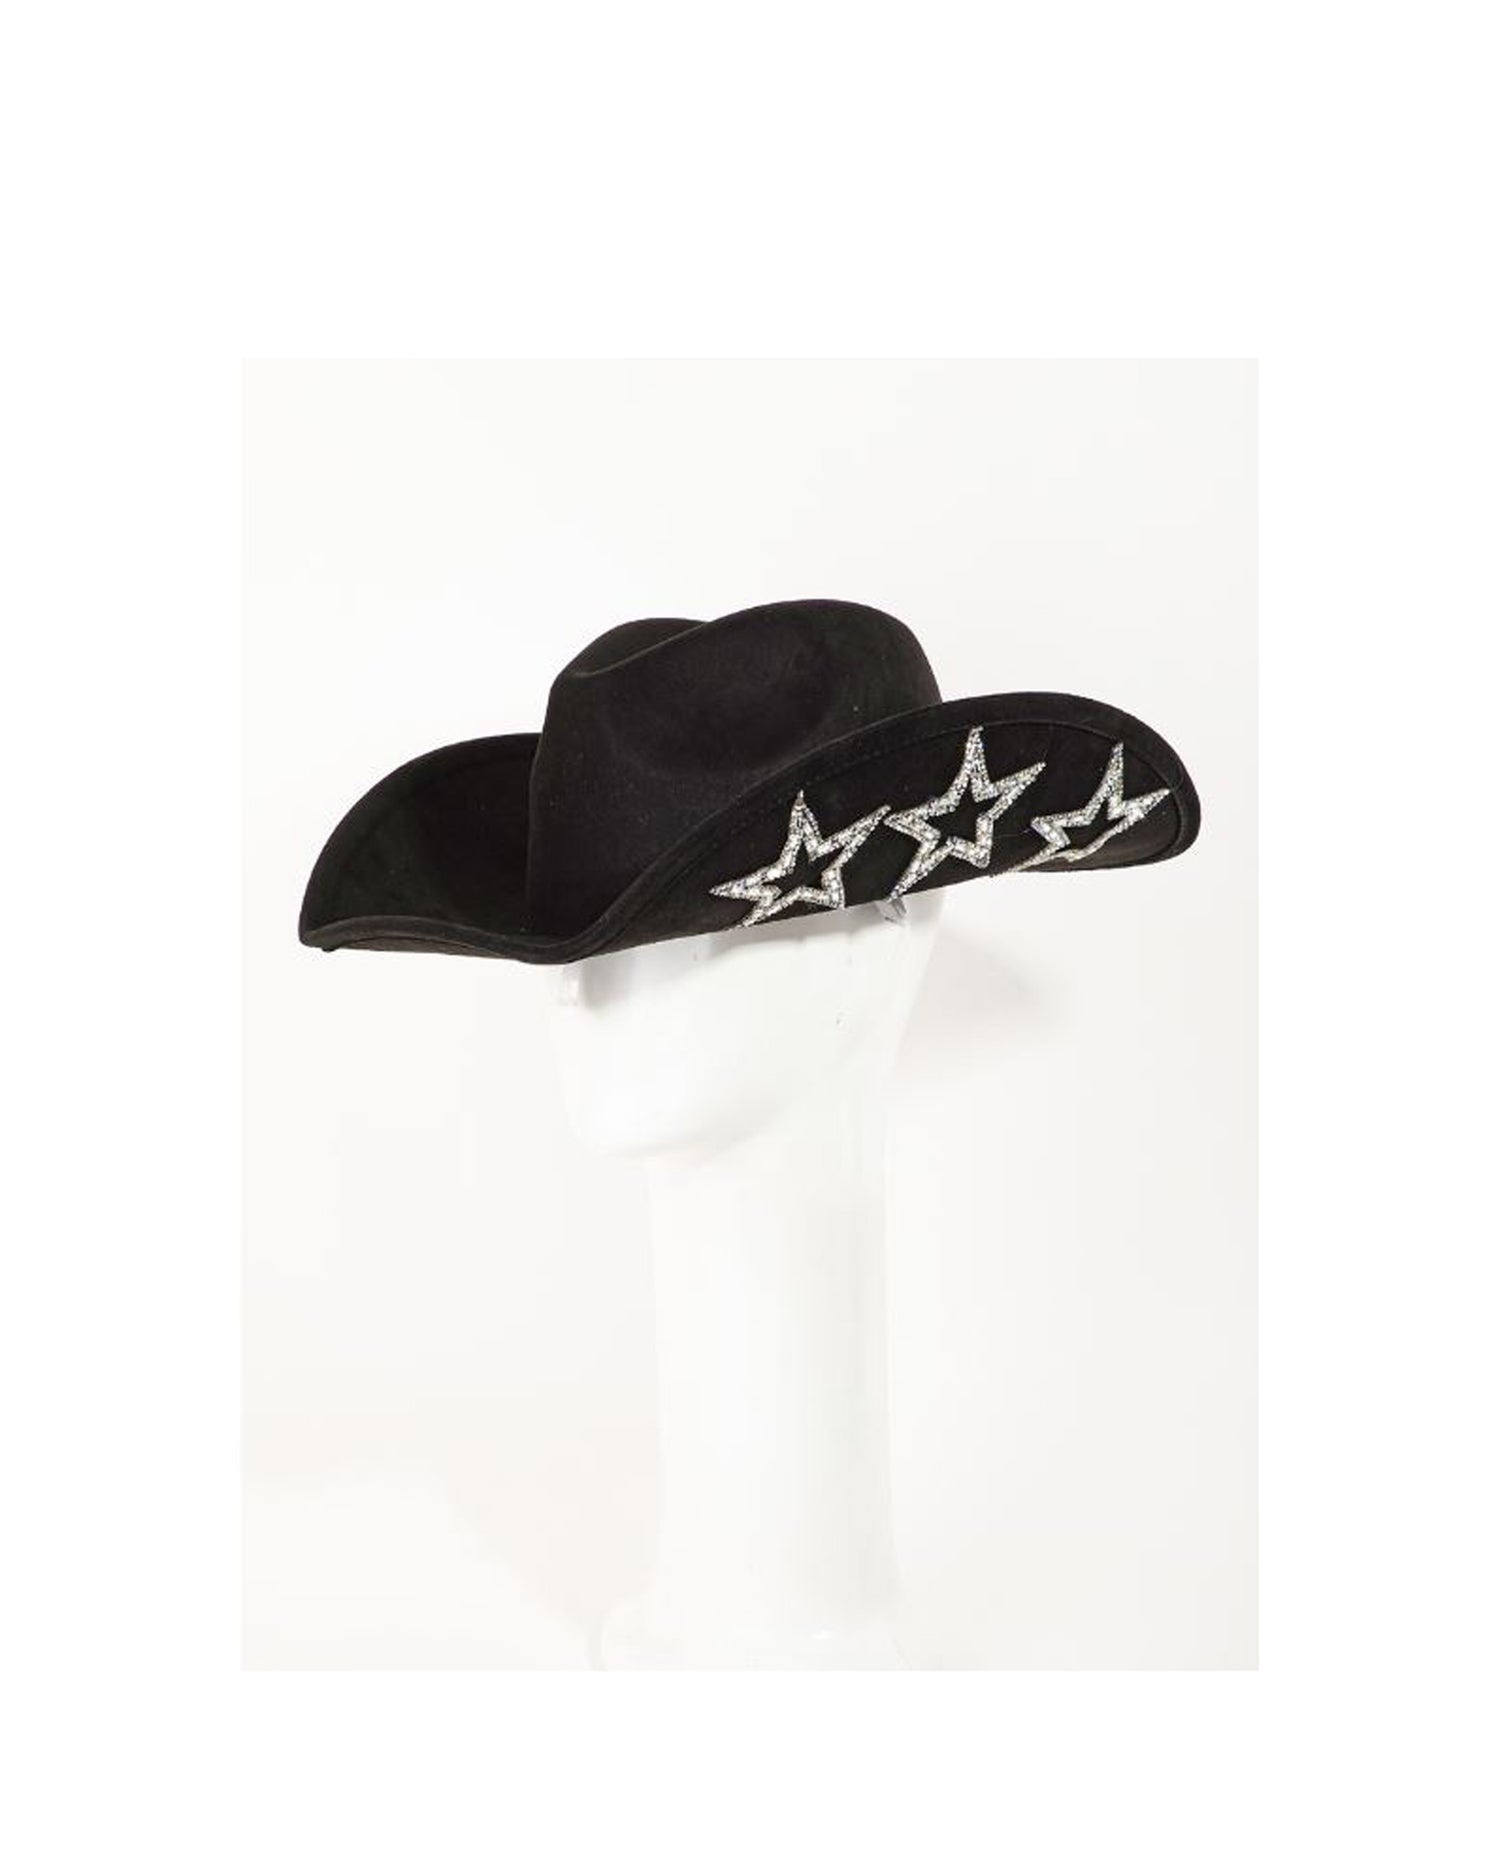 Studded Rhinestone Black Cowgirl Hat